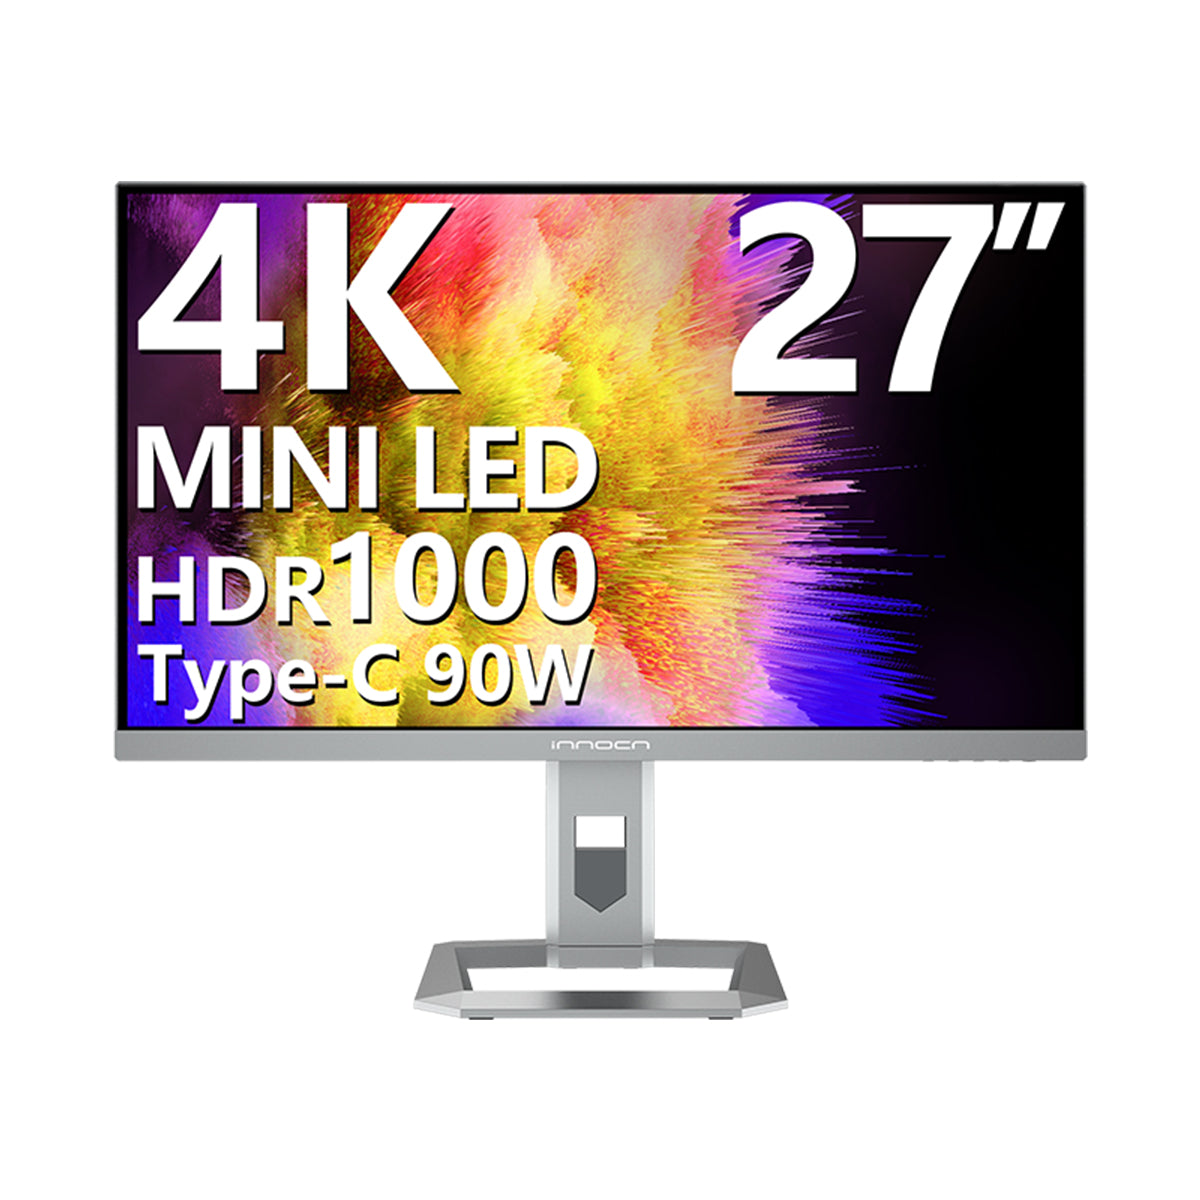 INNOCN 48Q1V 4K OLED 138Hz gaming monitor went on sale on